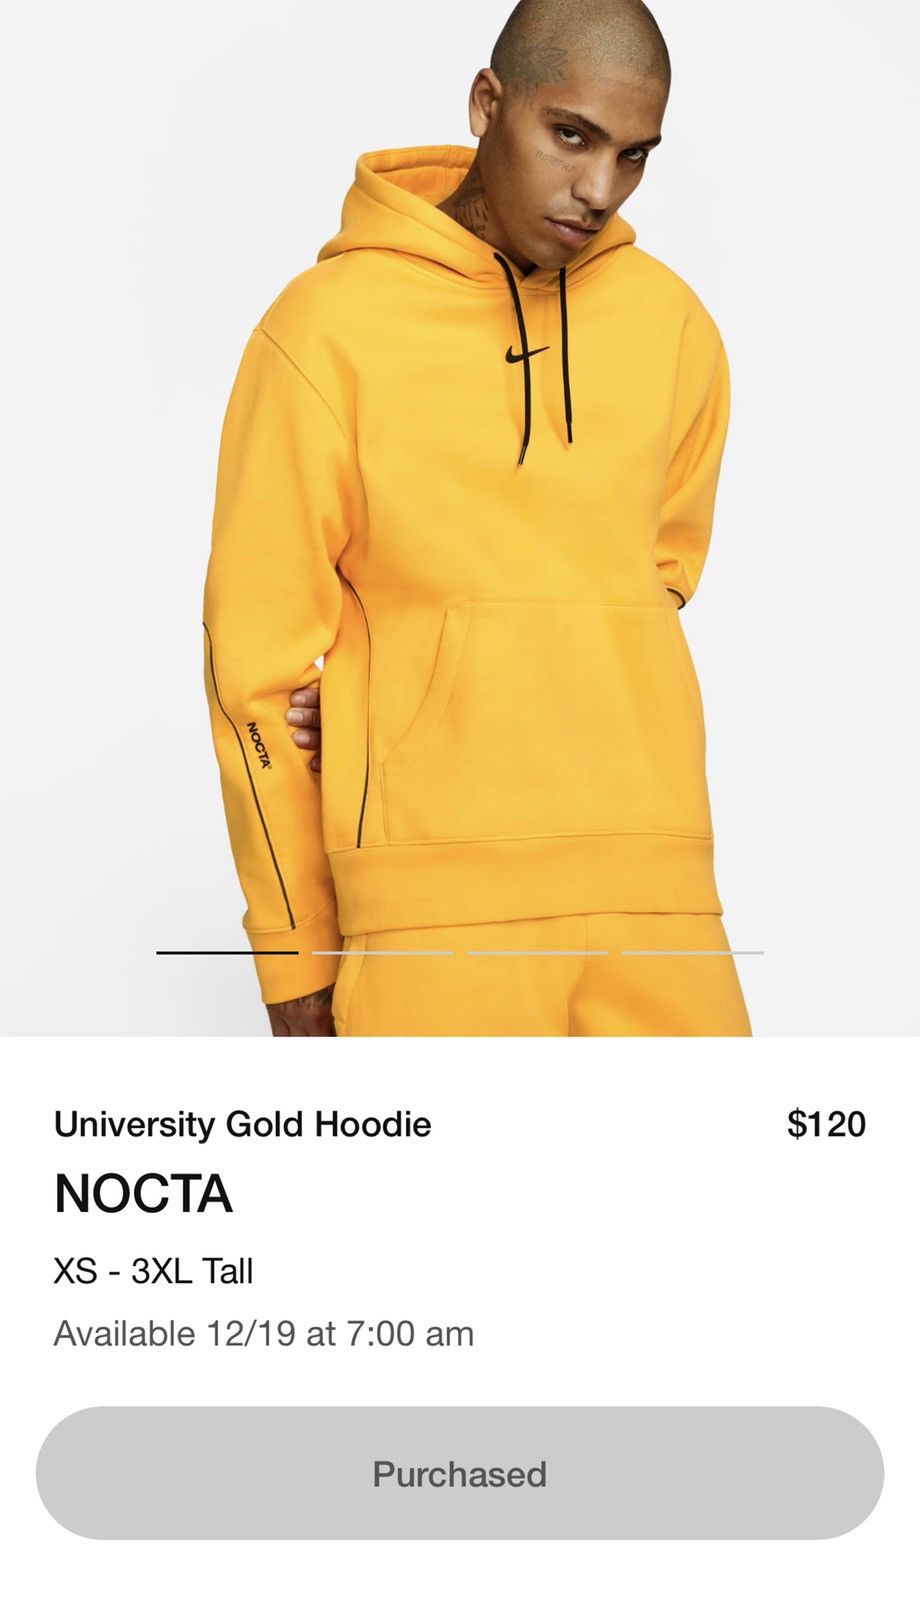 Nike Nike NOCTA University Gold Hoodie | Grailed